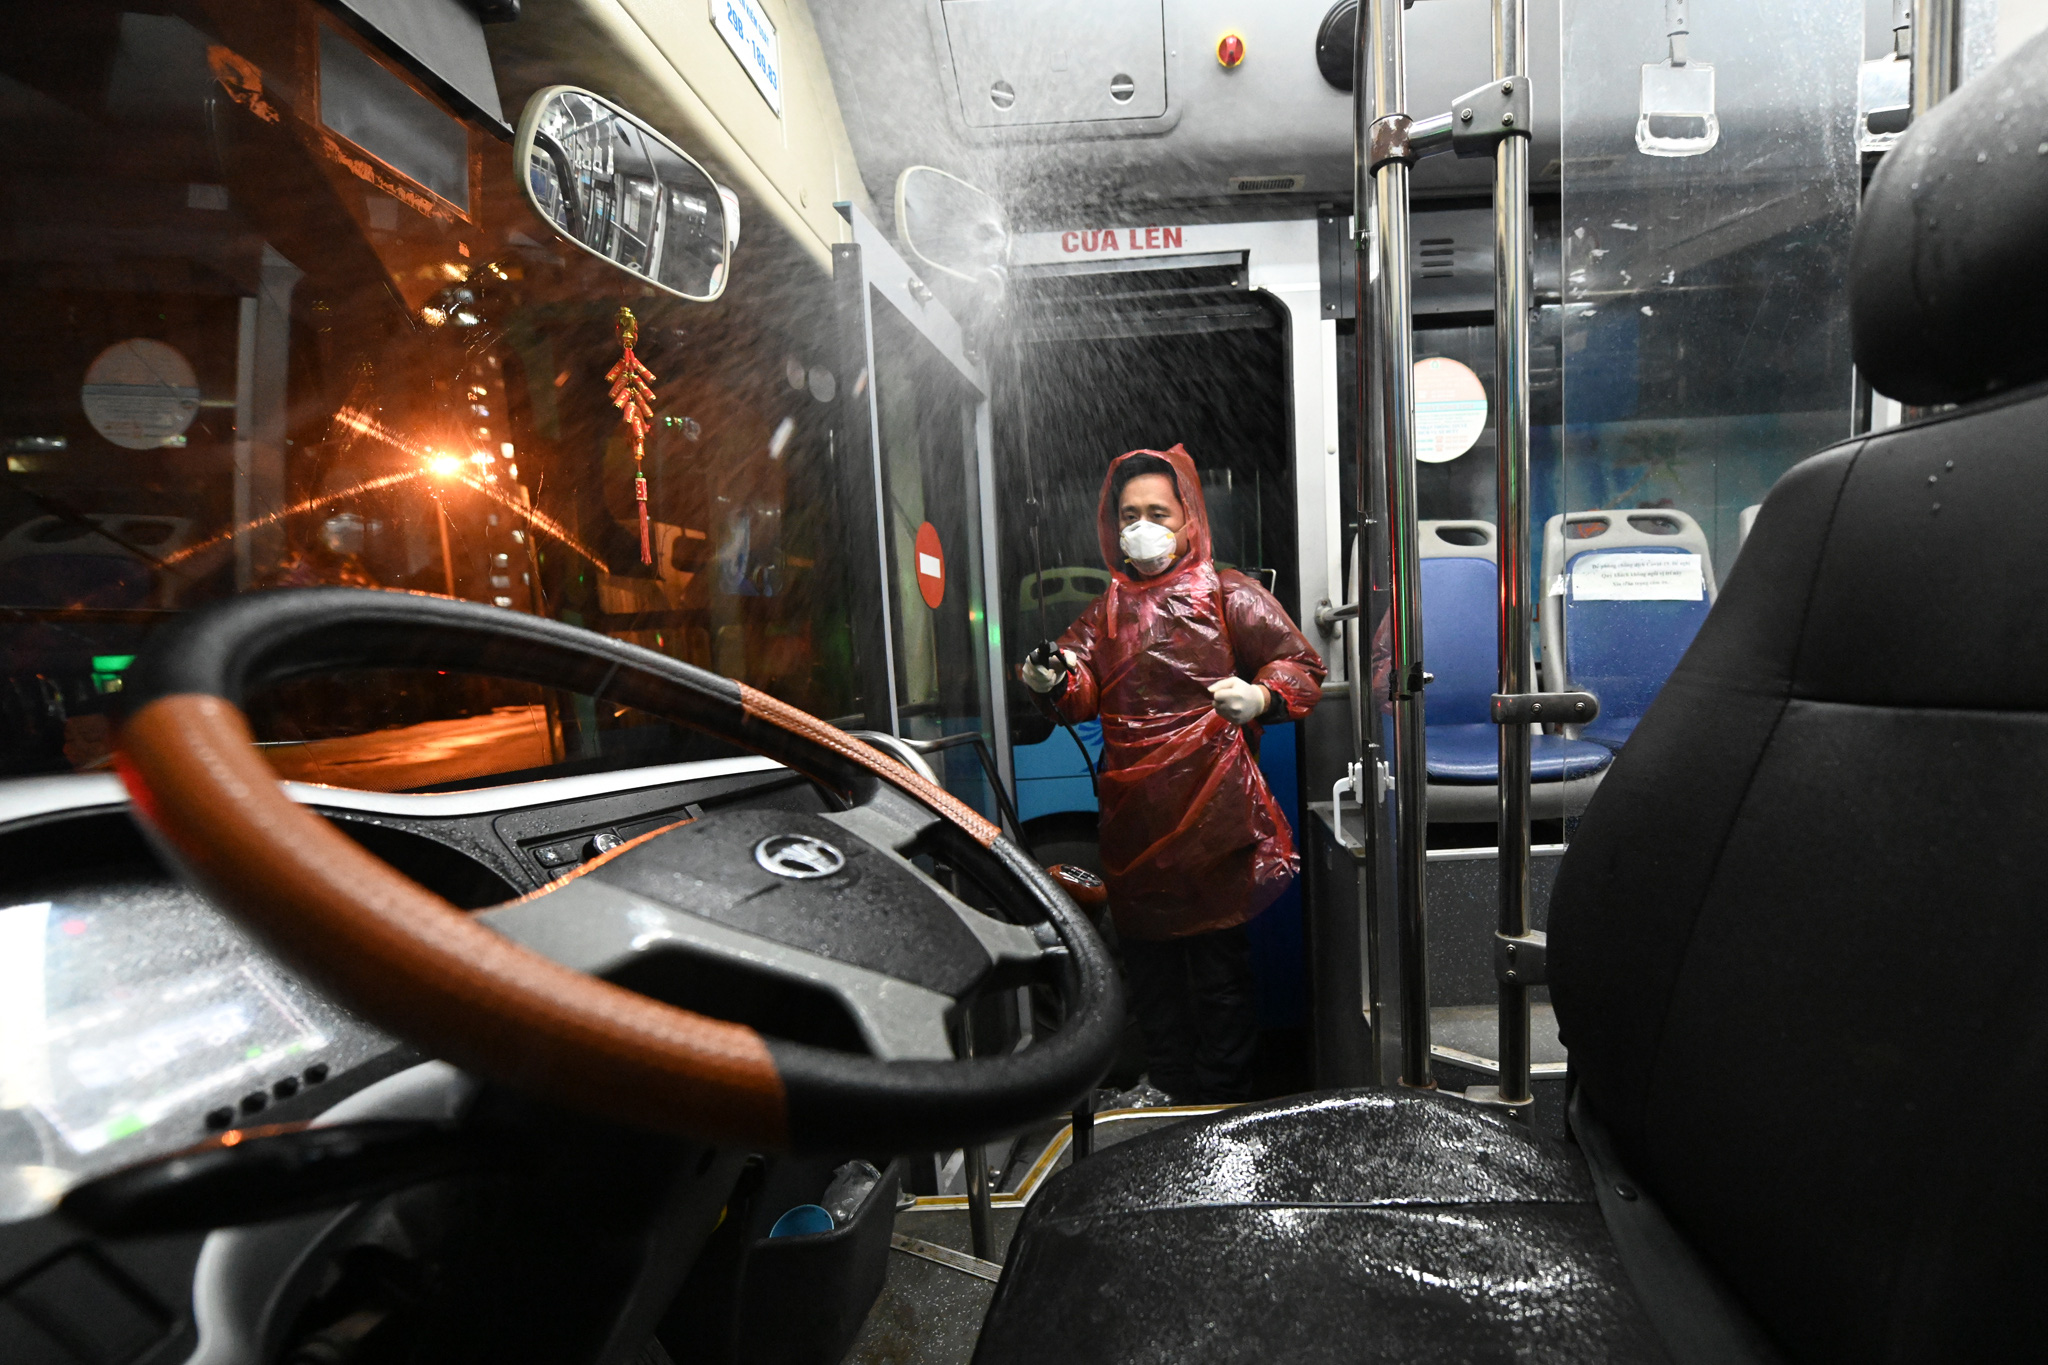 [ẢNH] Vẻ đẹp của gần 200 xe buýt tập kết về bến xếp hàng trong đêm - Ảnh 12.